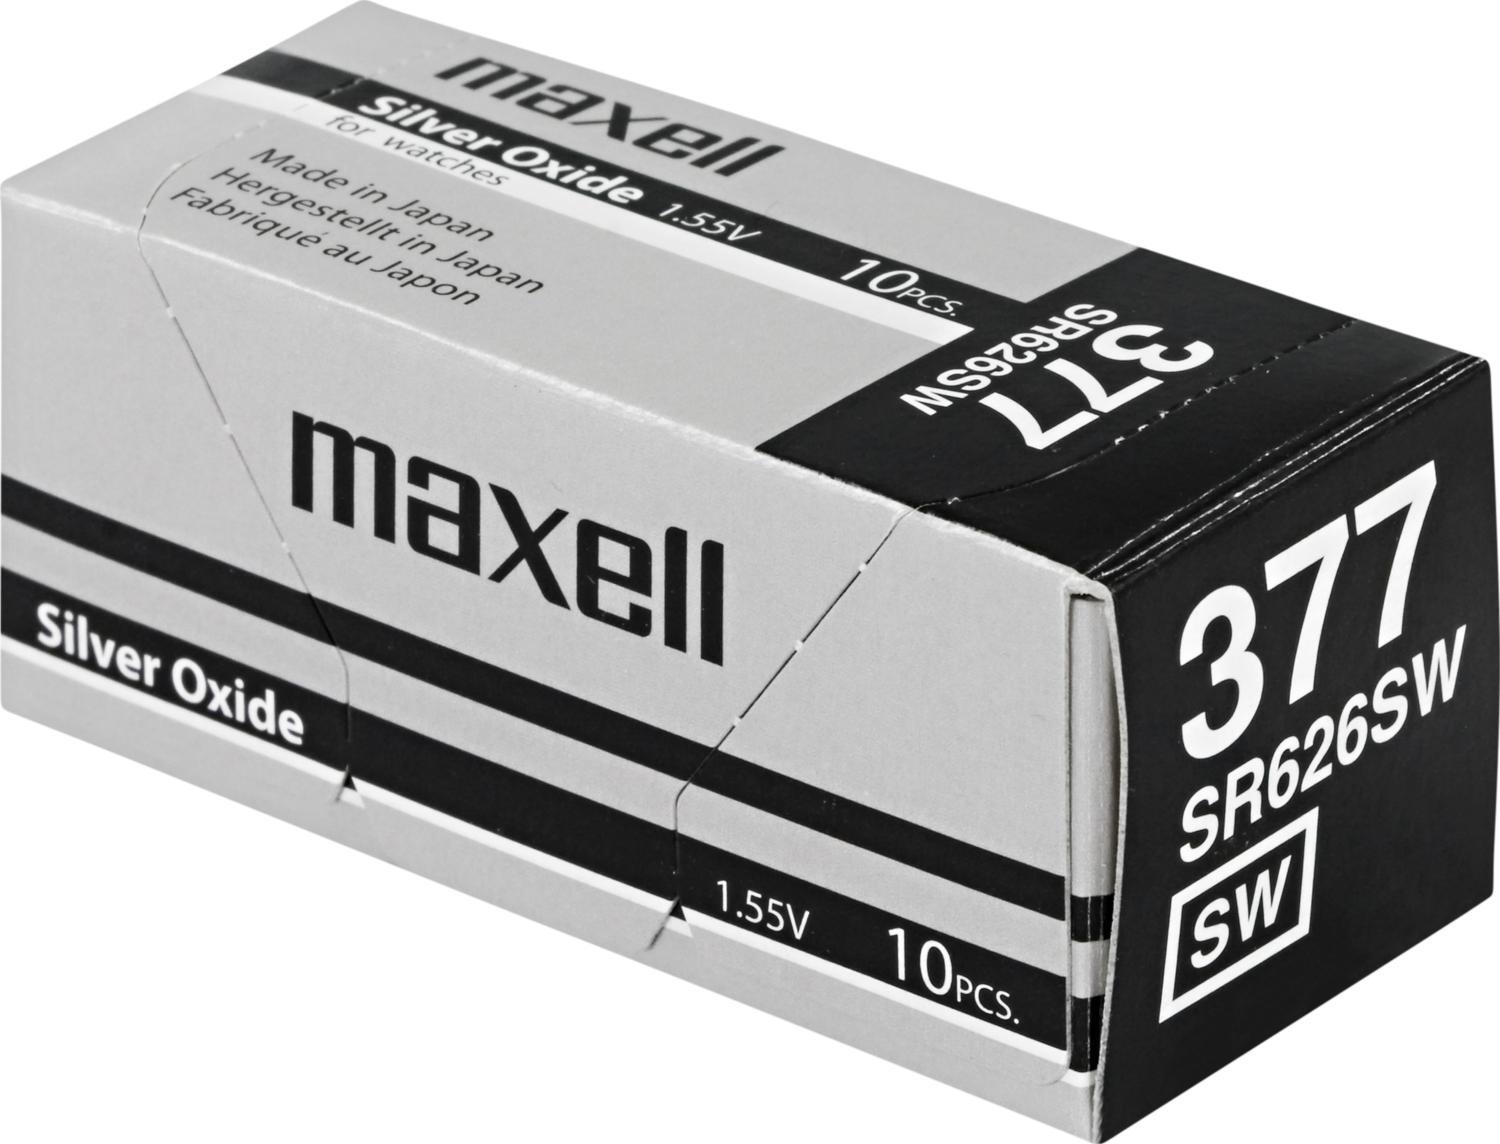 Maxell knappcellsbatteri, Silver-oxid, SR626SW(377), 1,55V, 10-pack - Elkjøp